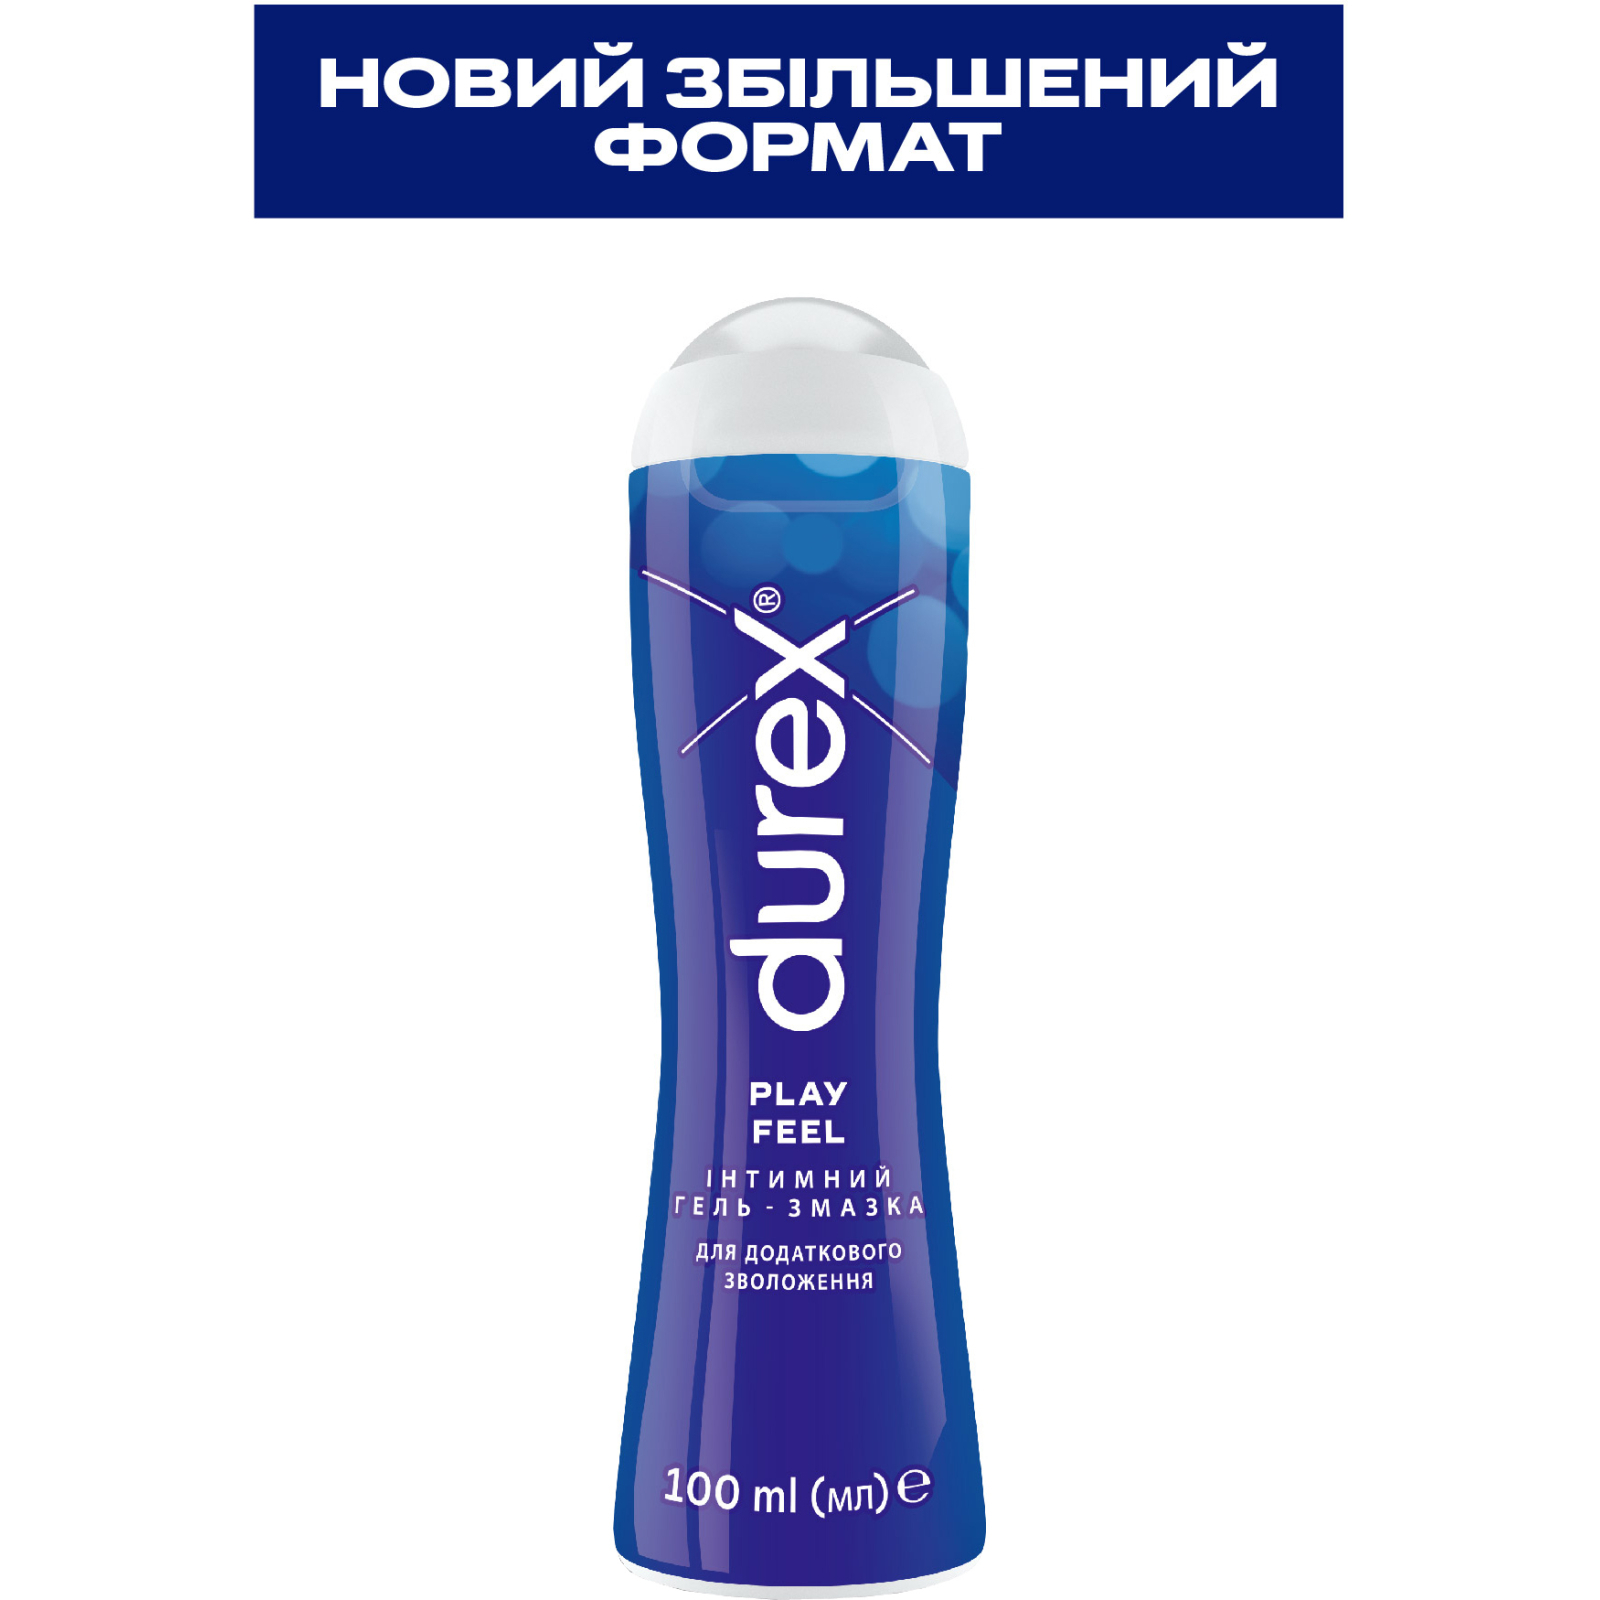 Интимный гель-смазка Durex Play Feel для дополнительного увлажнения (лубрикант) 100 мл (4820108005129) изображение 2